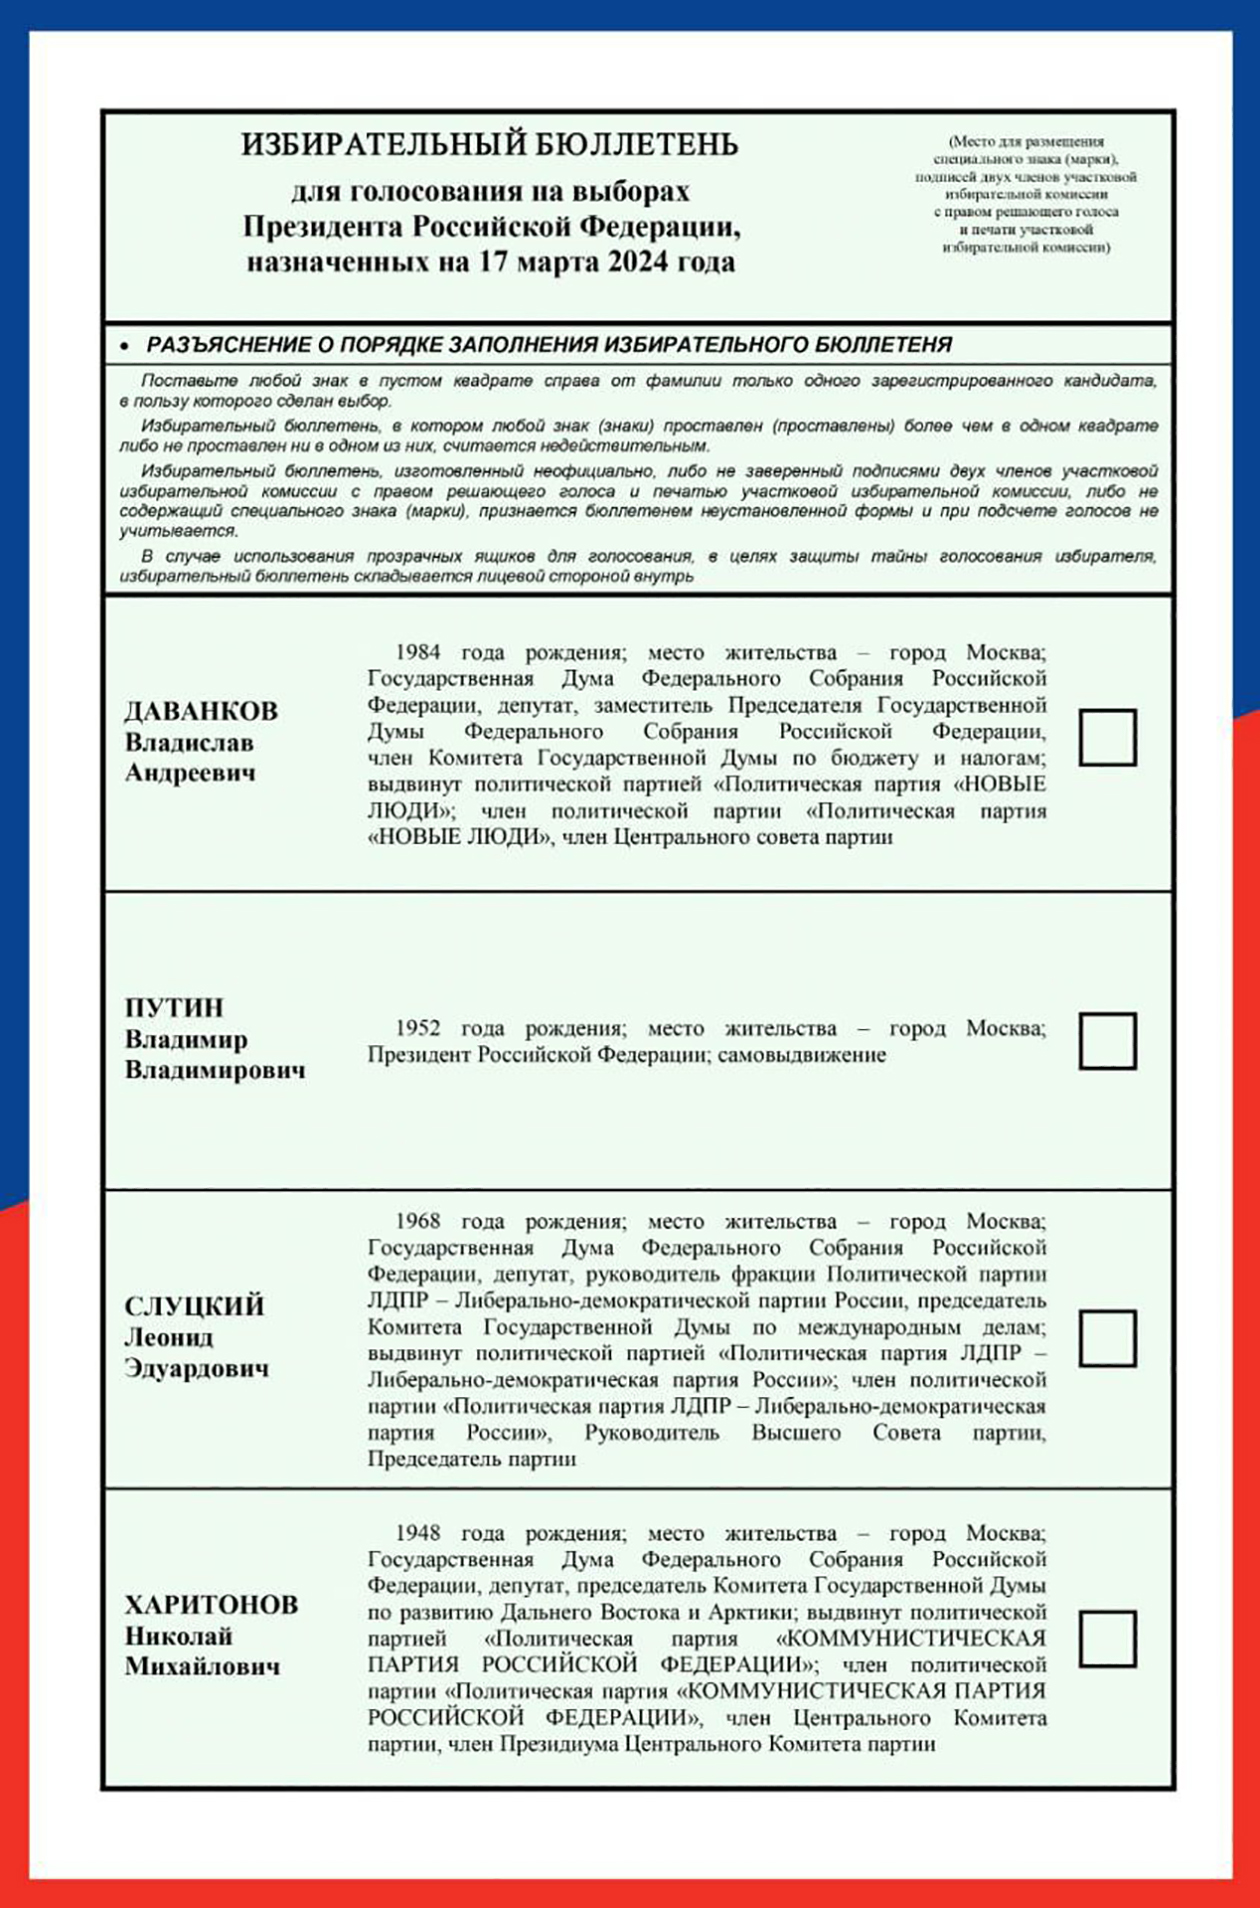 Бюллетень на выборах президента в 2024 году. Источник: телеграм-канал ЦИК РФ